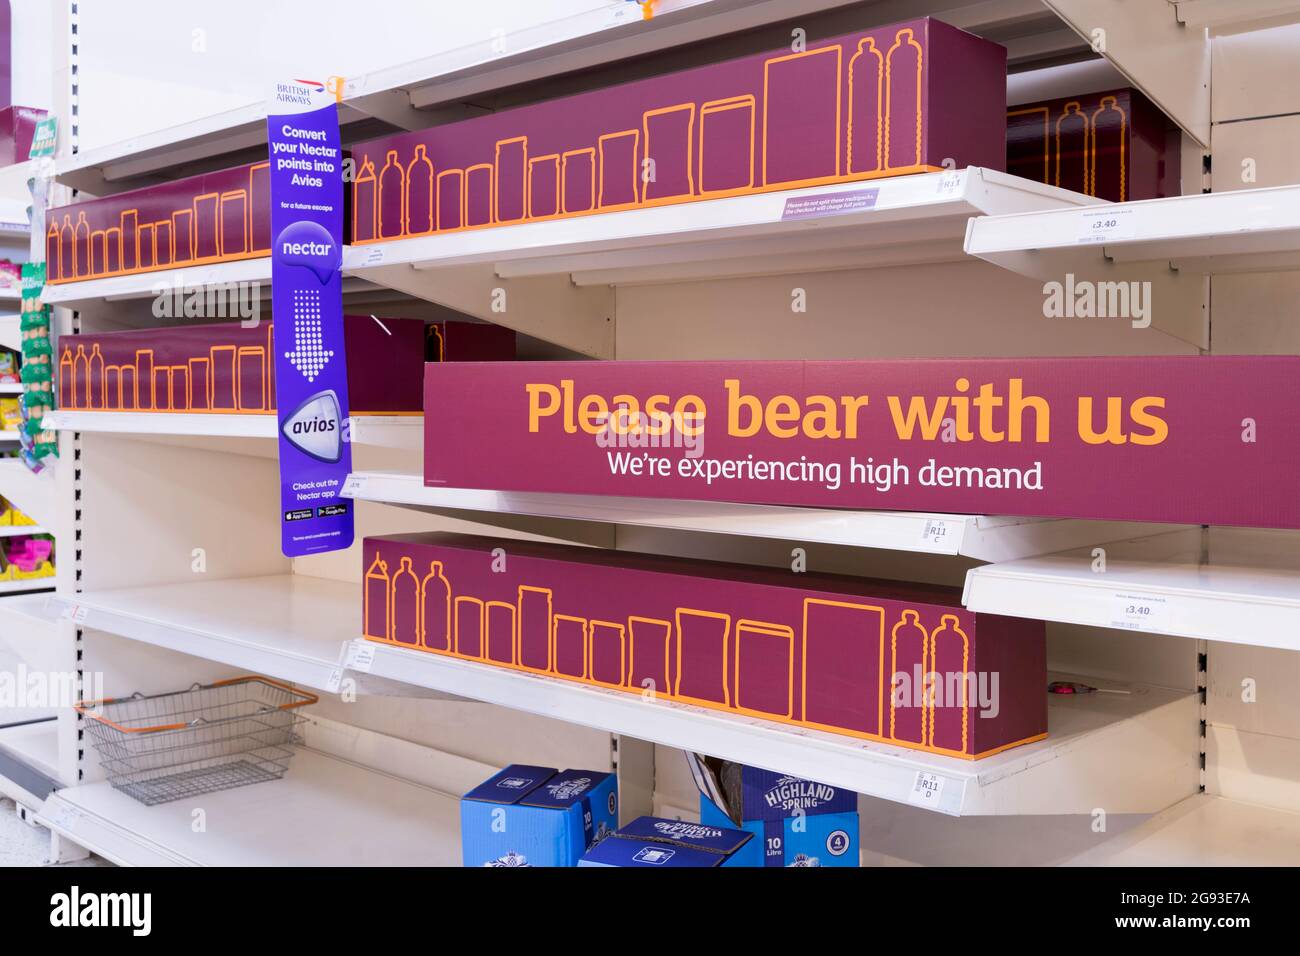 A causa della carenza di personale e di cibo, scaffali al supermercato Sainsbury's che mostra 'si prega di portare con noi' e sostituito con cartone vuoto Foto Stock